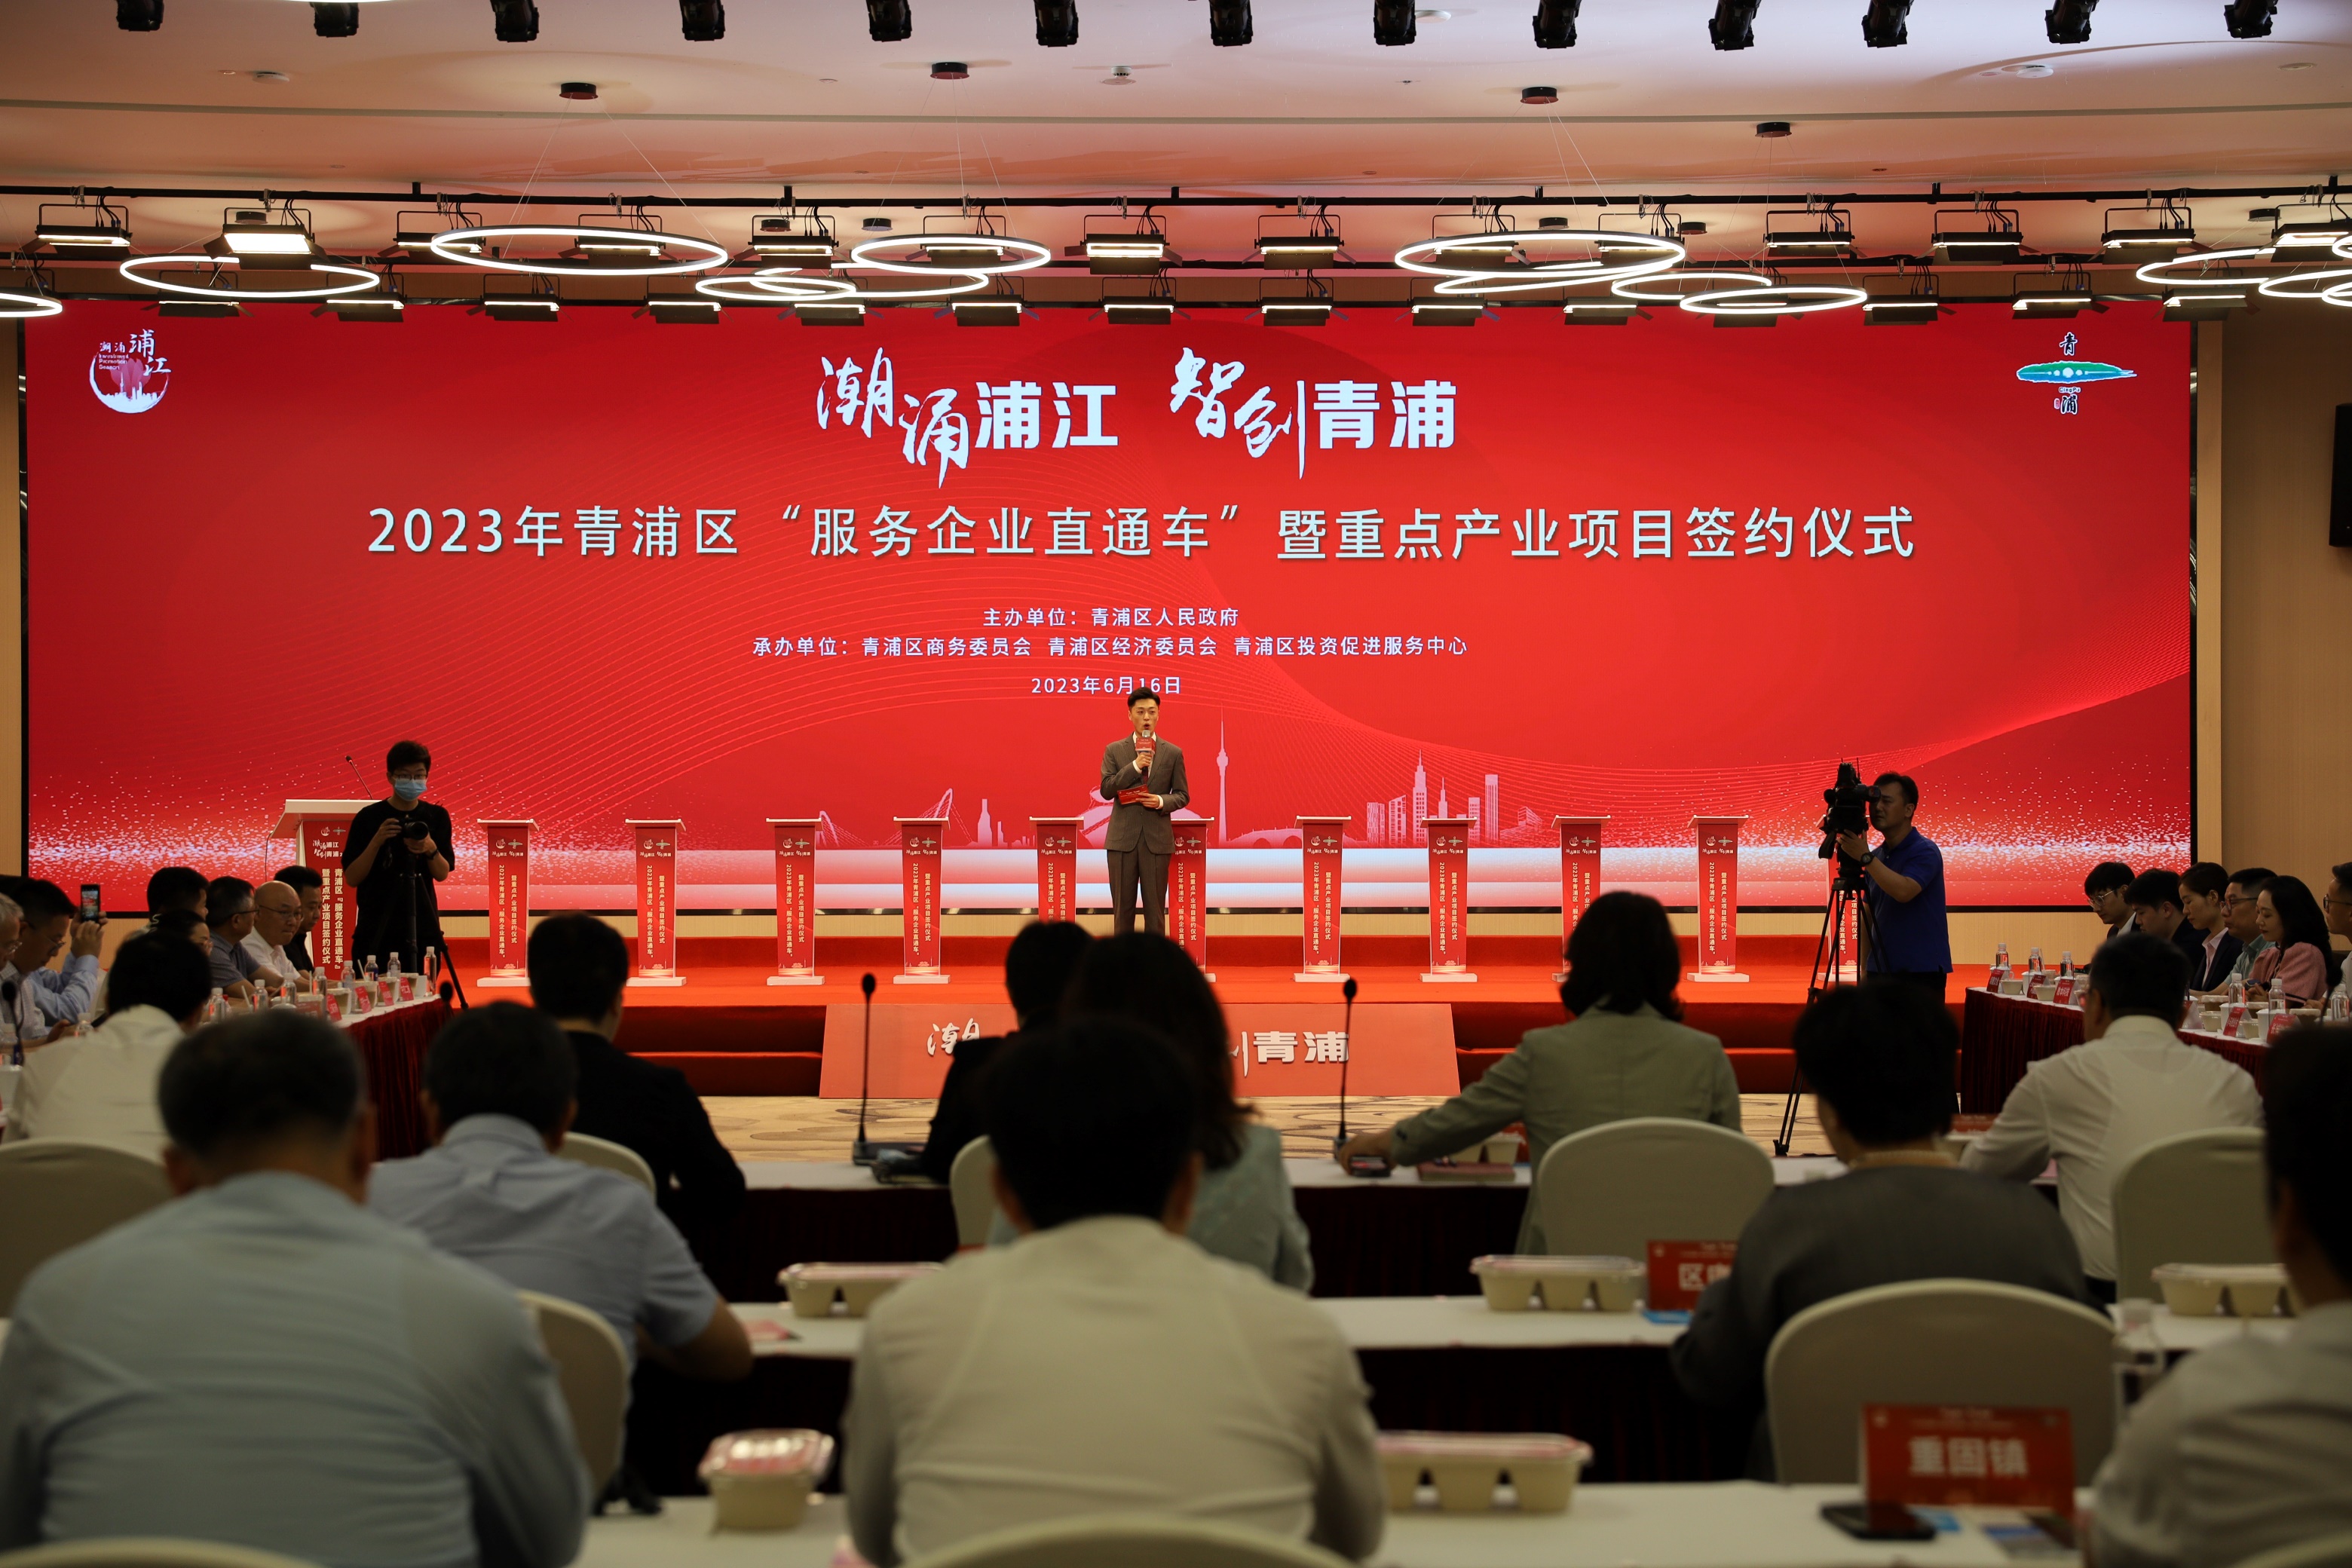 Ускоряя строительство цифровой магистральной линии в дельте реки Янцзы, XSL официально обосновался в DreamSmartLand